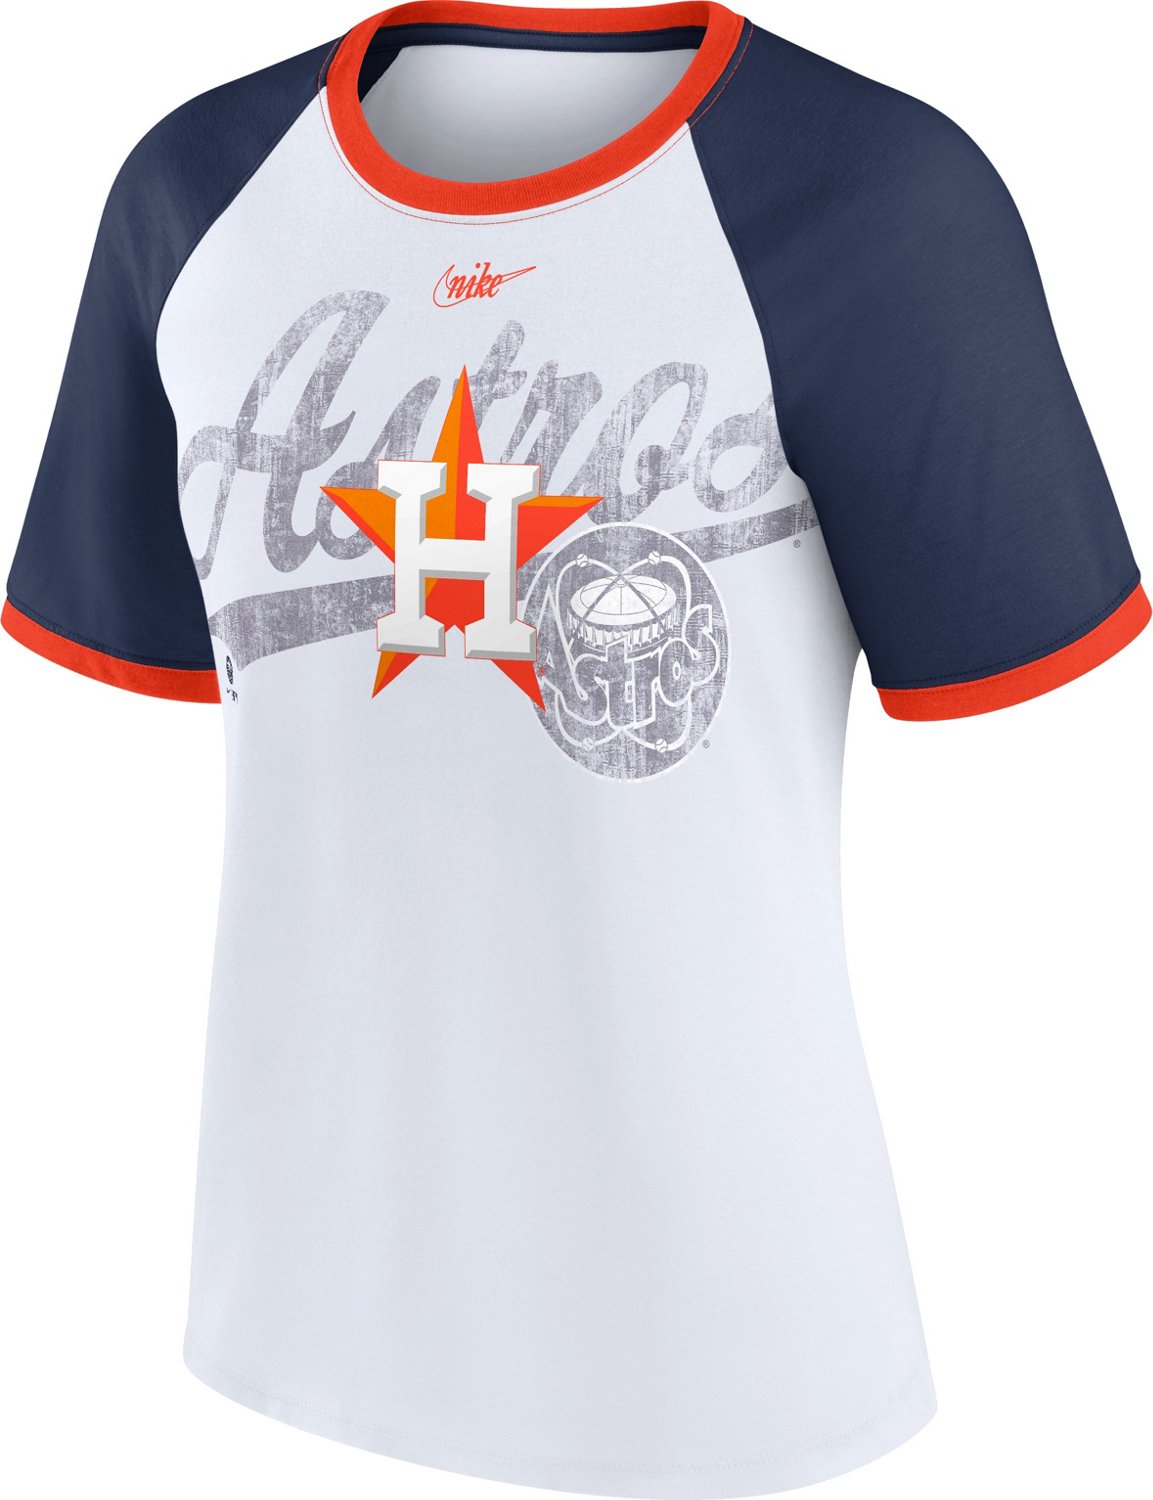 Houston Astros Orange Women's Fashion V-Neck T-Shirt by Nike